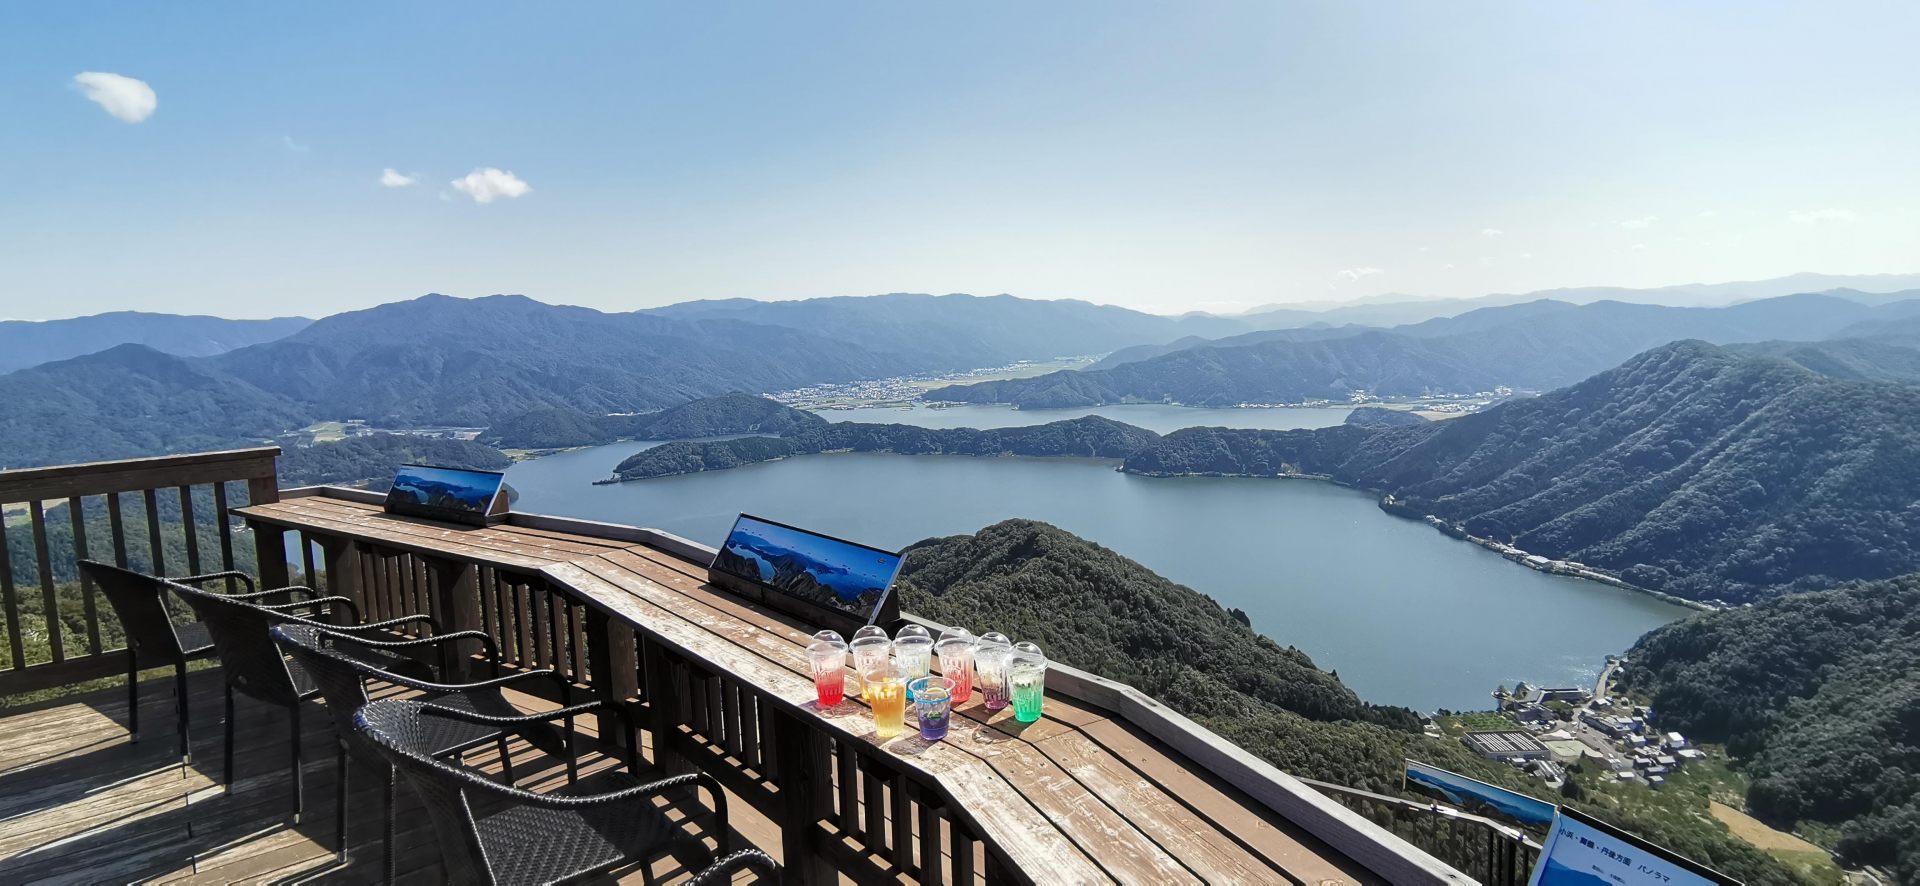 公園内で唯一、日本海と三方五湖すべての湖を眺められる「若狭テラス」。